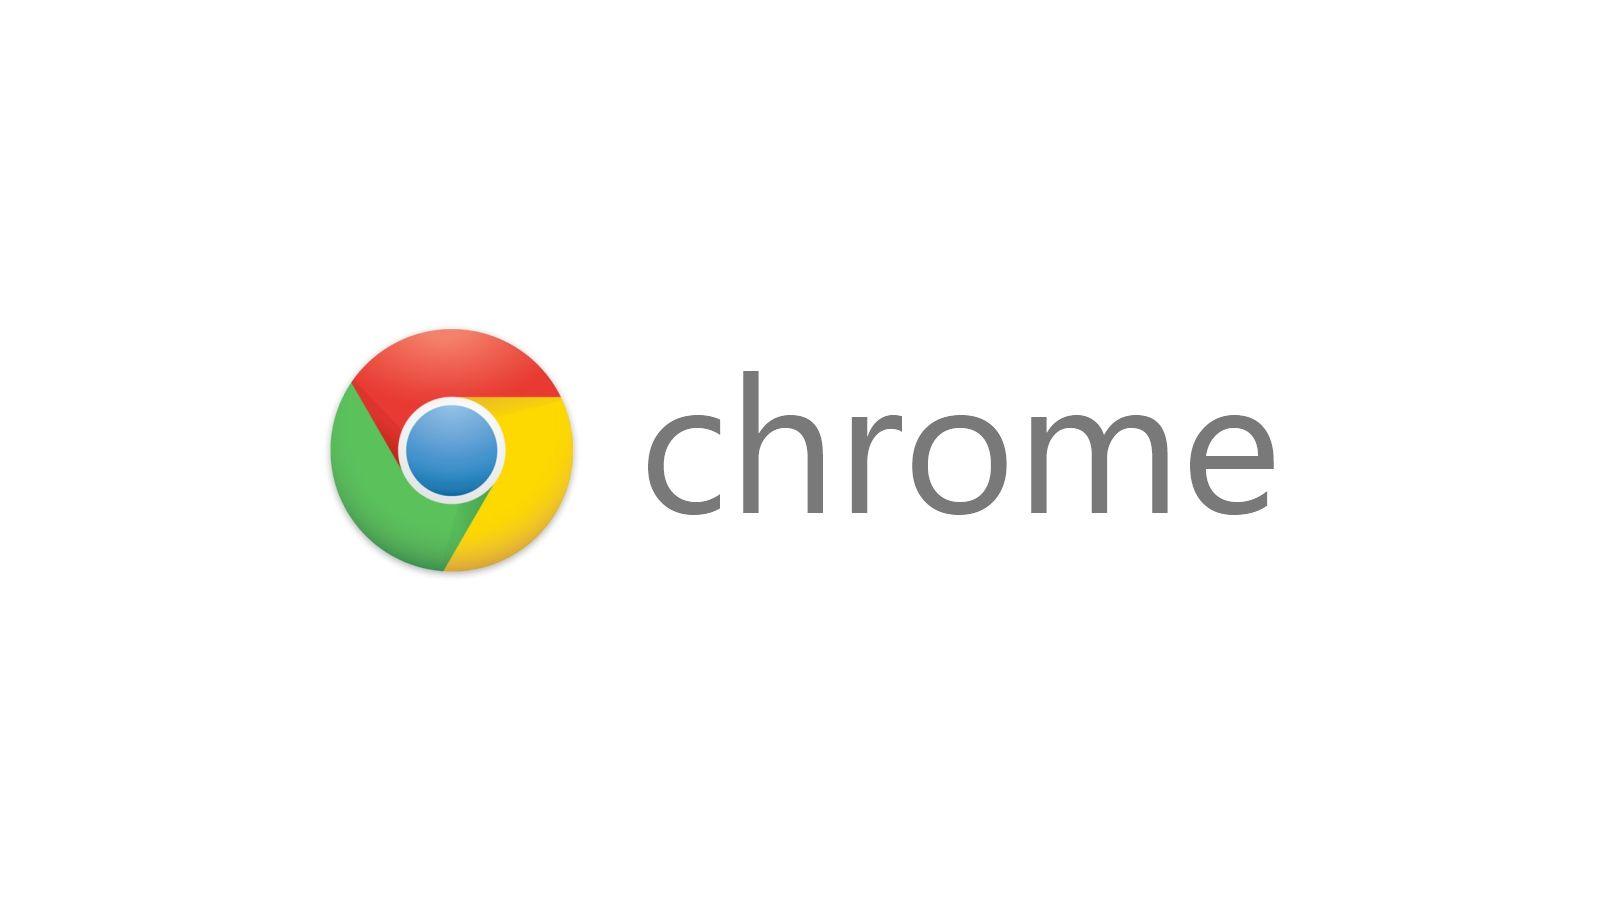 Official Google Chrome Logo - Google chrome Logos